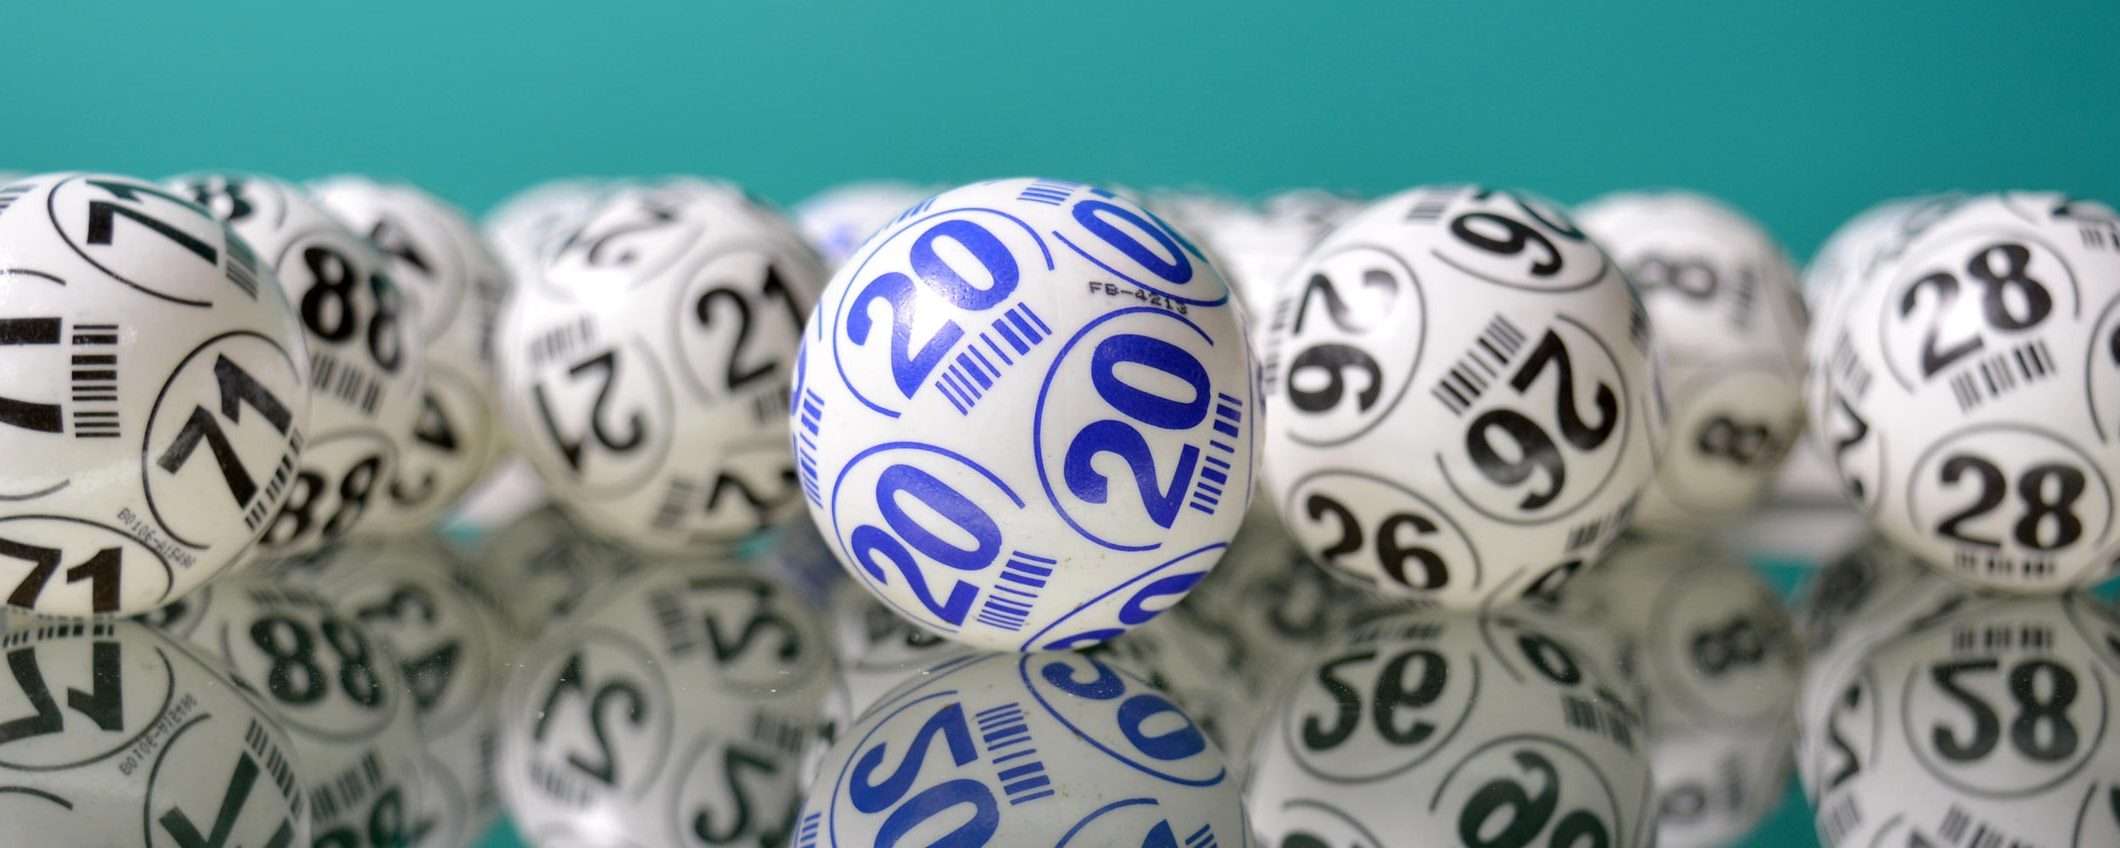 Lotterie e truffe: come proteggersi dal pericolo